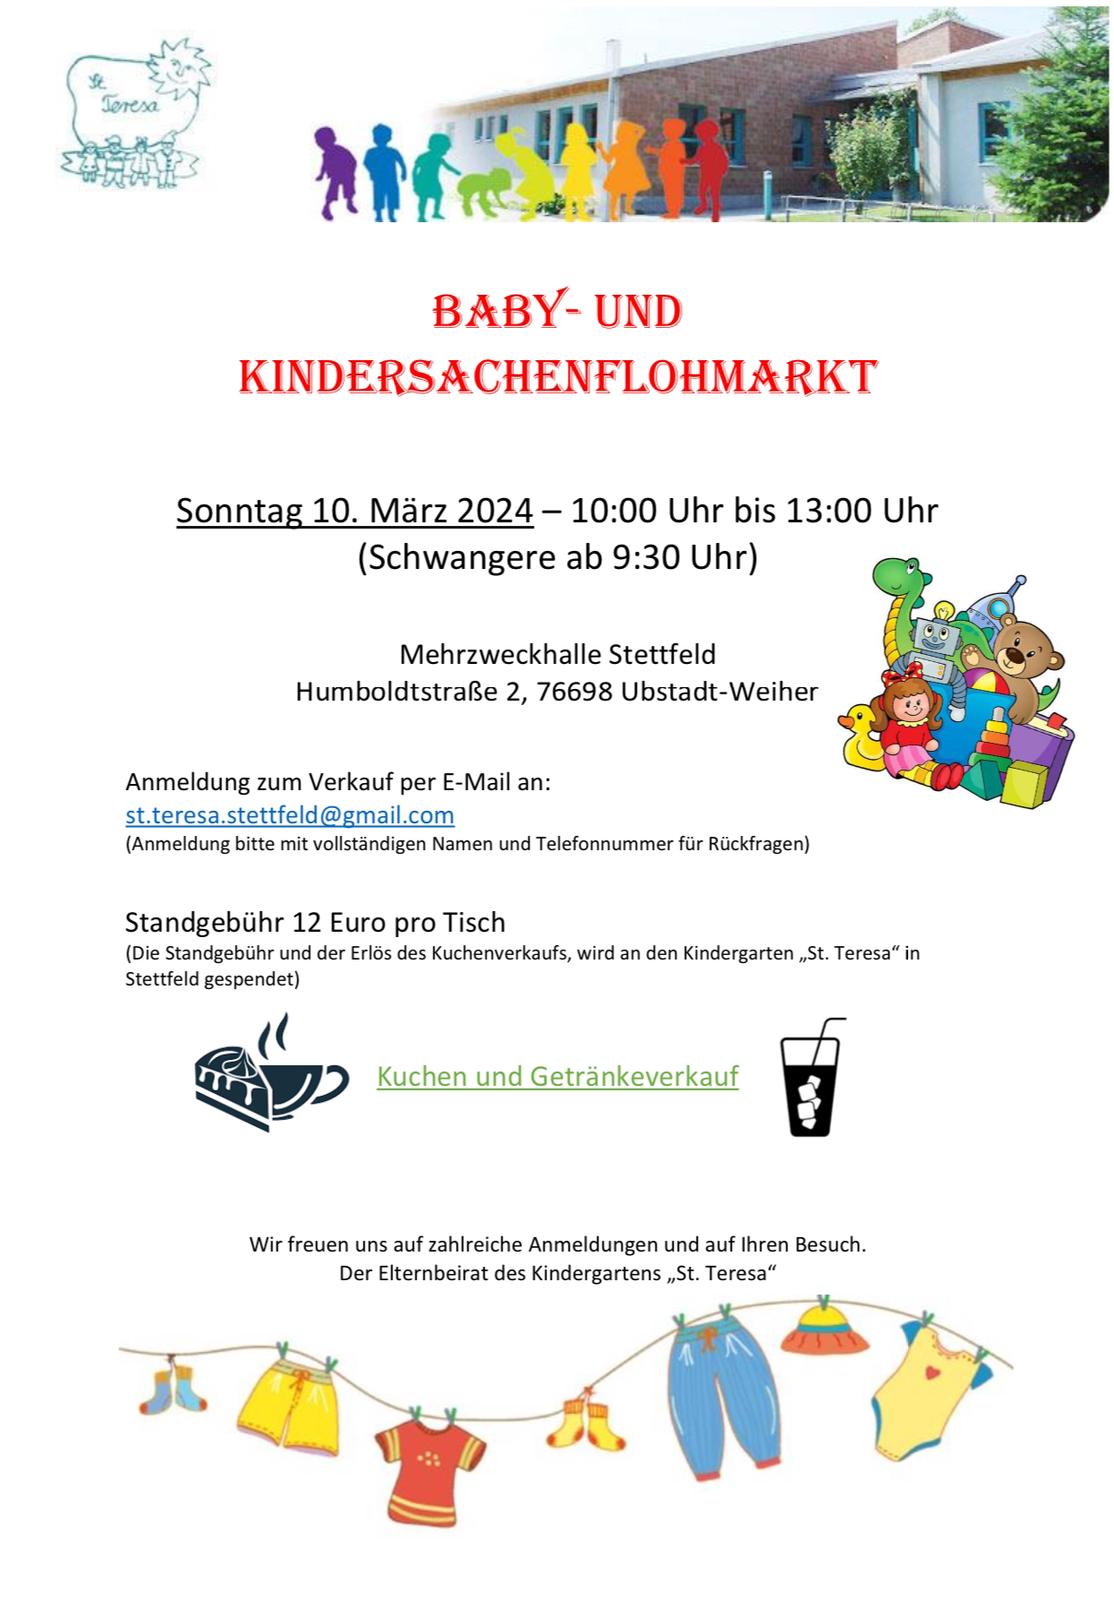 Kindersachenflomarkt | Ubstadt-Weiher